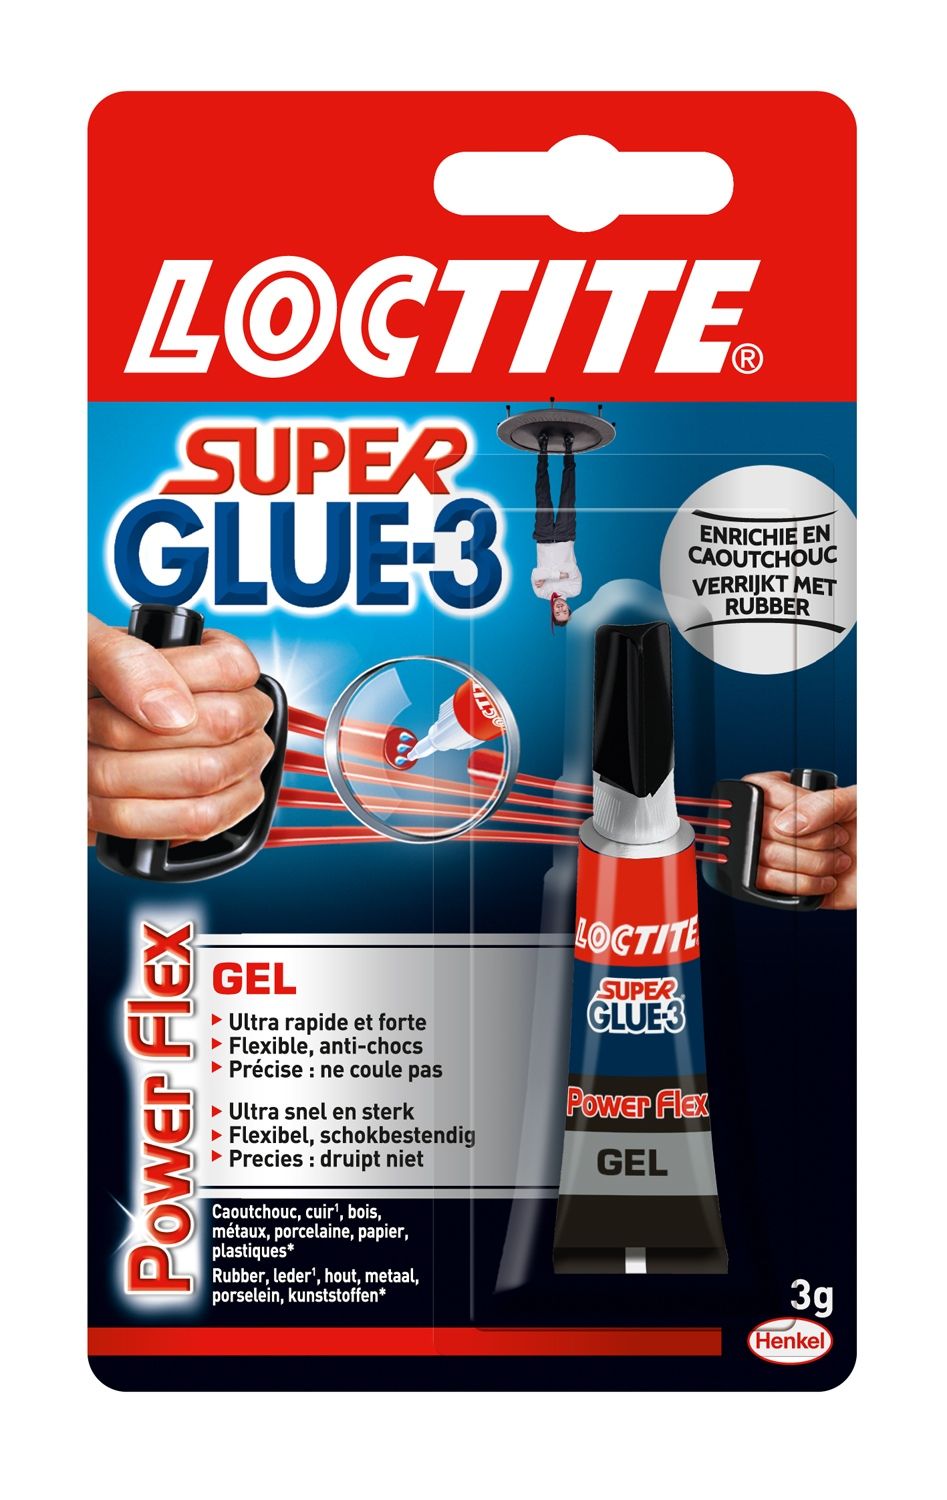 https://www.les-papeteries.be/8934/colle-instantanee-gel-loctite-super-glue-3-power-flex-gel.jpg